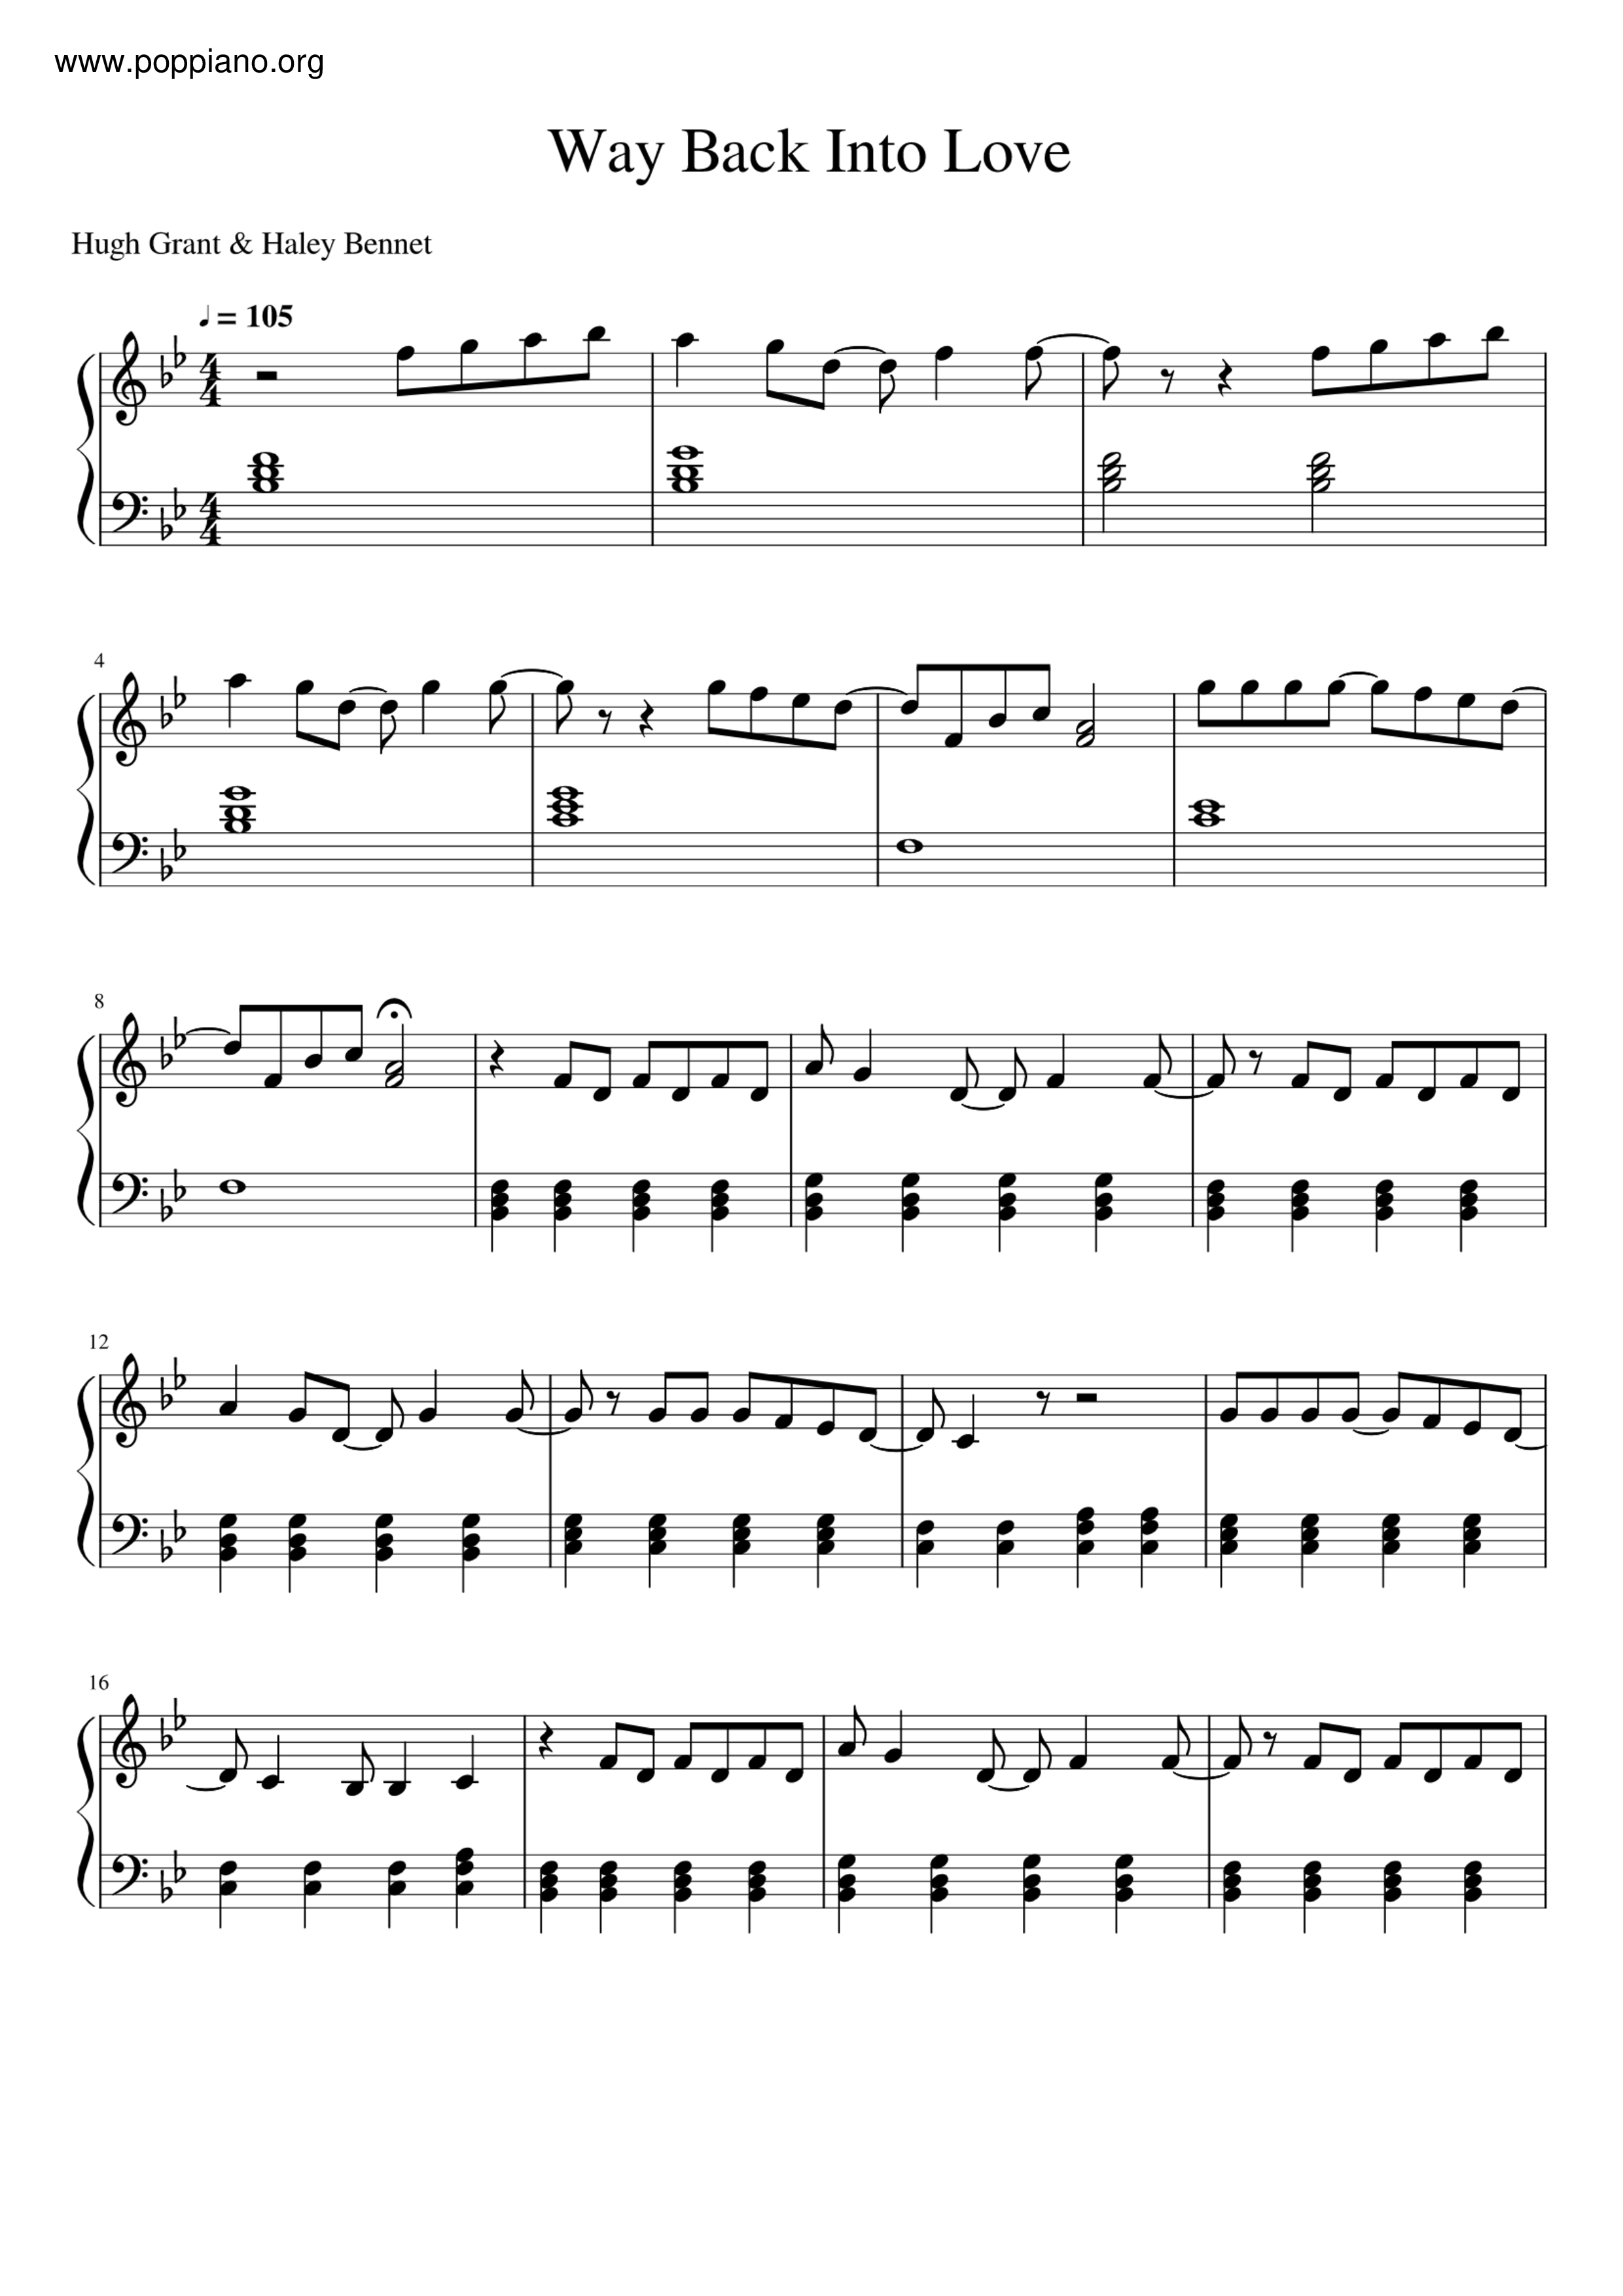 Privación Centro de la ciudad arrojar polvo en los ojos ☆ Way Back Into Love | Sheet Music | Piano Score Free PDF Download | HK Pop  Piano Academy